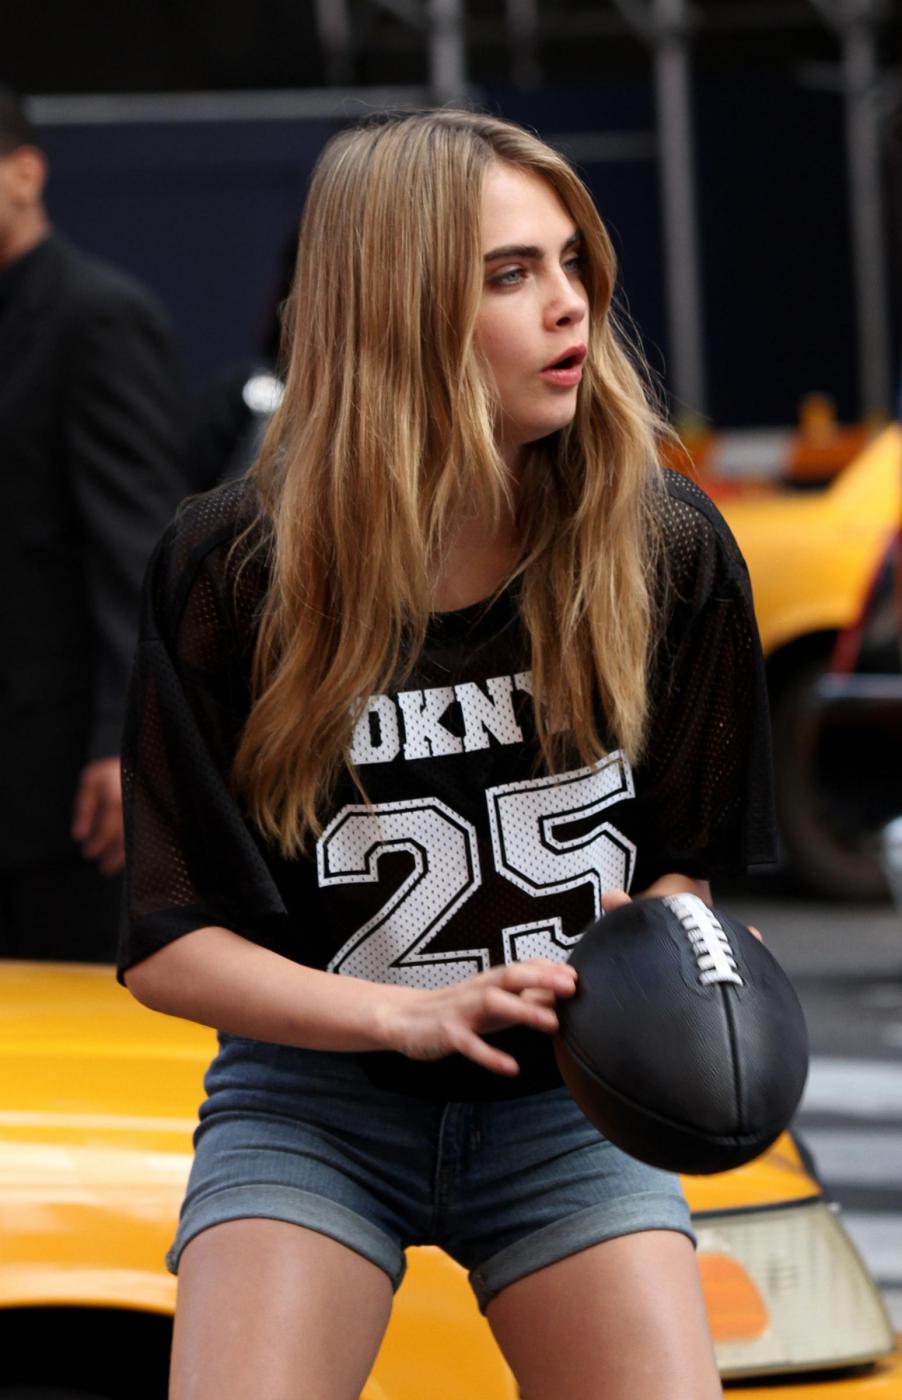 Cara Delevigne giocatrice di football nello shooting fotografico per DKNY 04